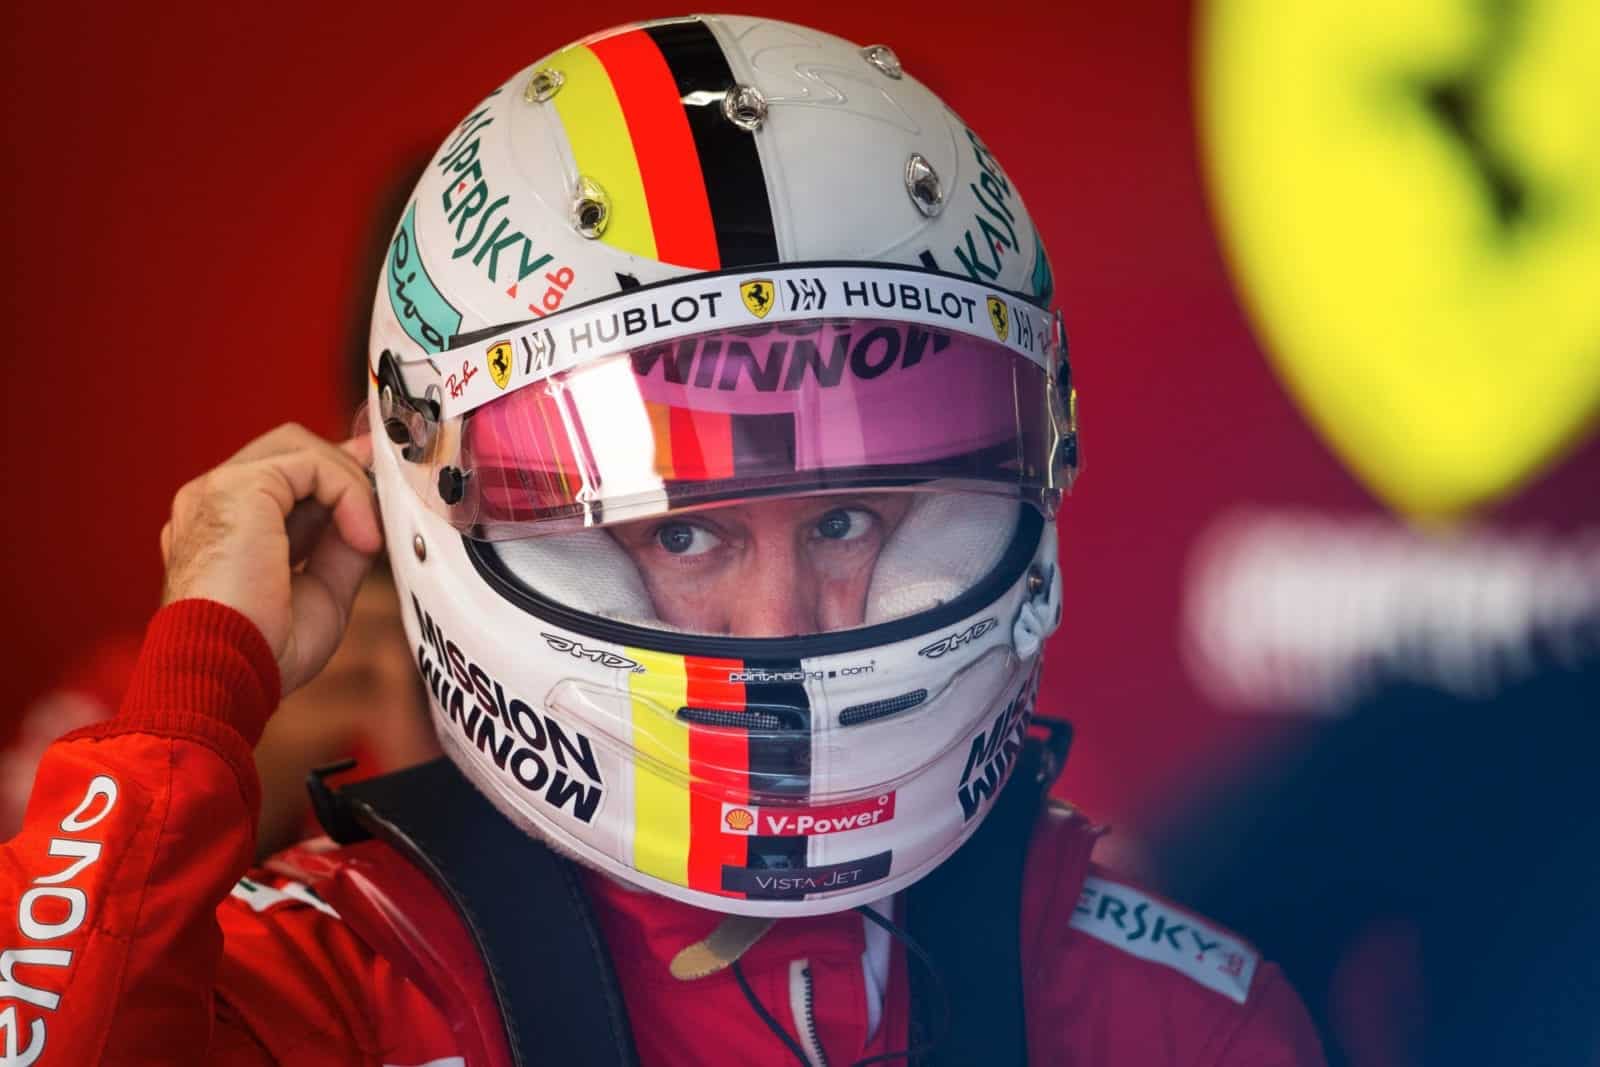 Sebastian Vettel in the Ferrari garage